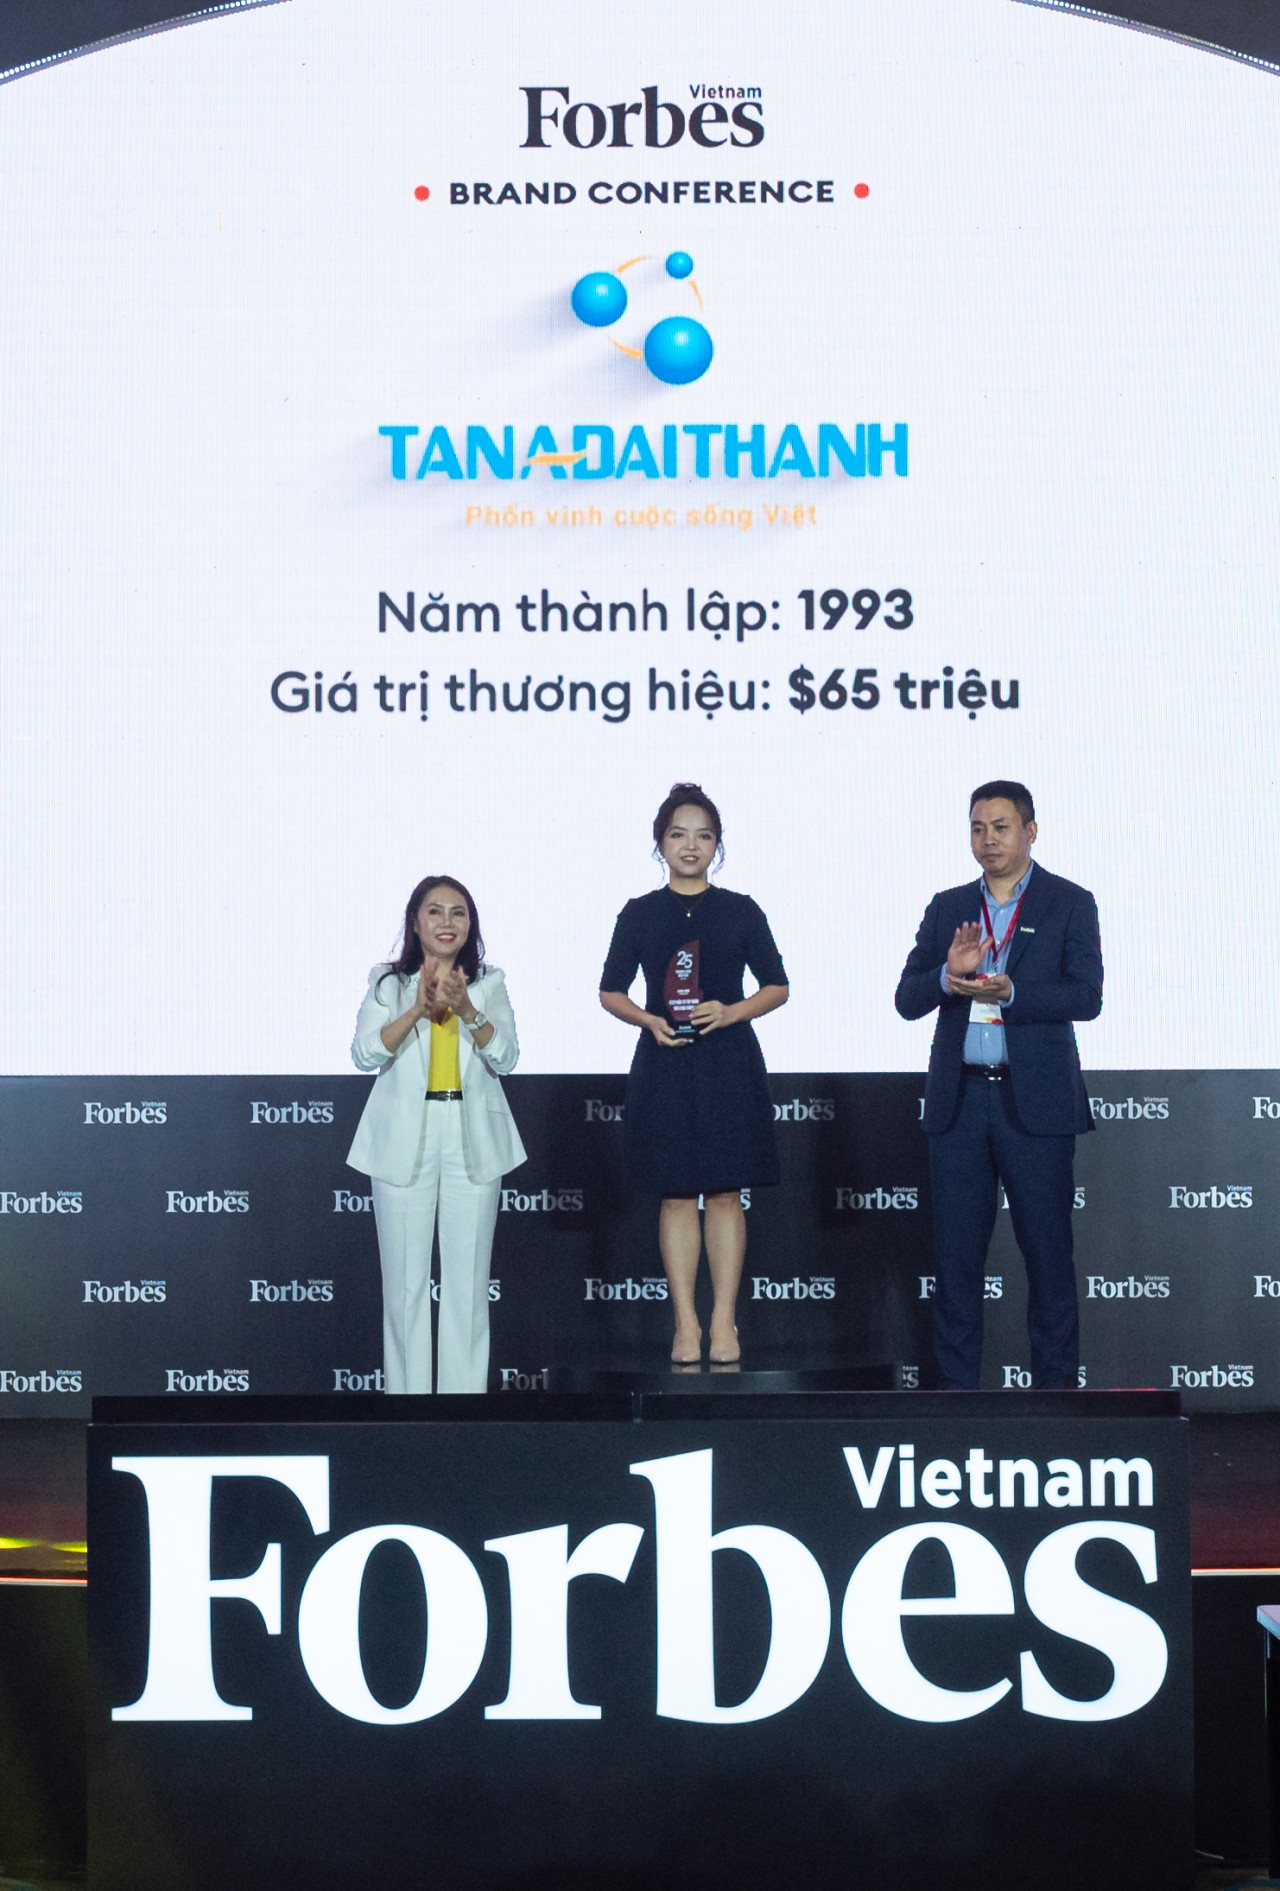 Bà Nguyễn Ngọc Thùy Dương, Phó TGĐ Tập đoàn Tân Á Đại Thành nhận chứng nhận vinh danh từ Forbes Việt Nam (Ảnh: Forbes Việt Nam)